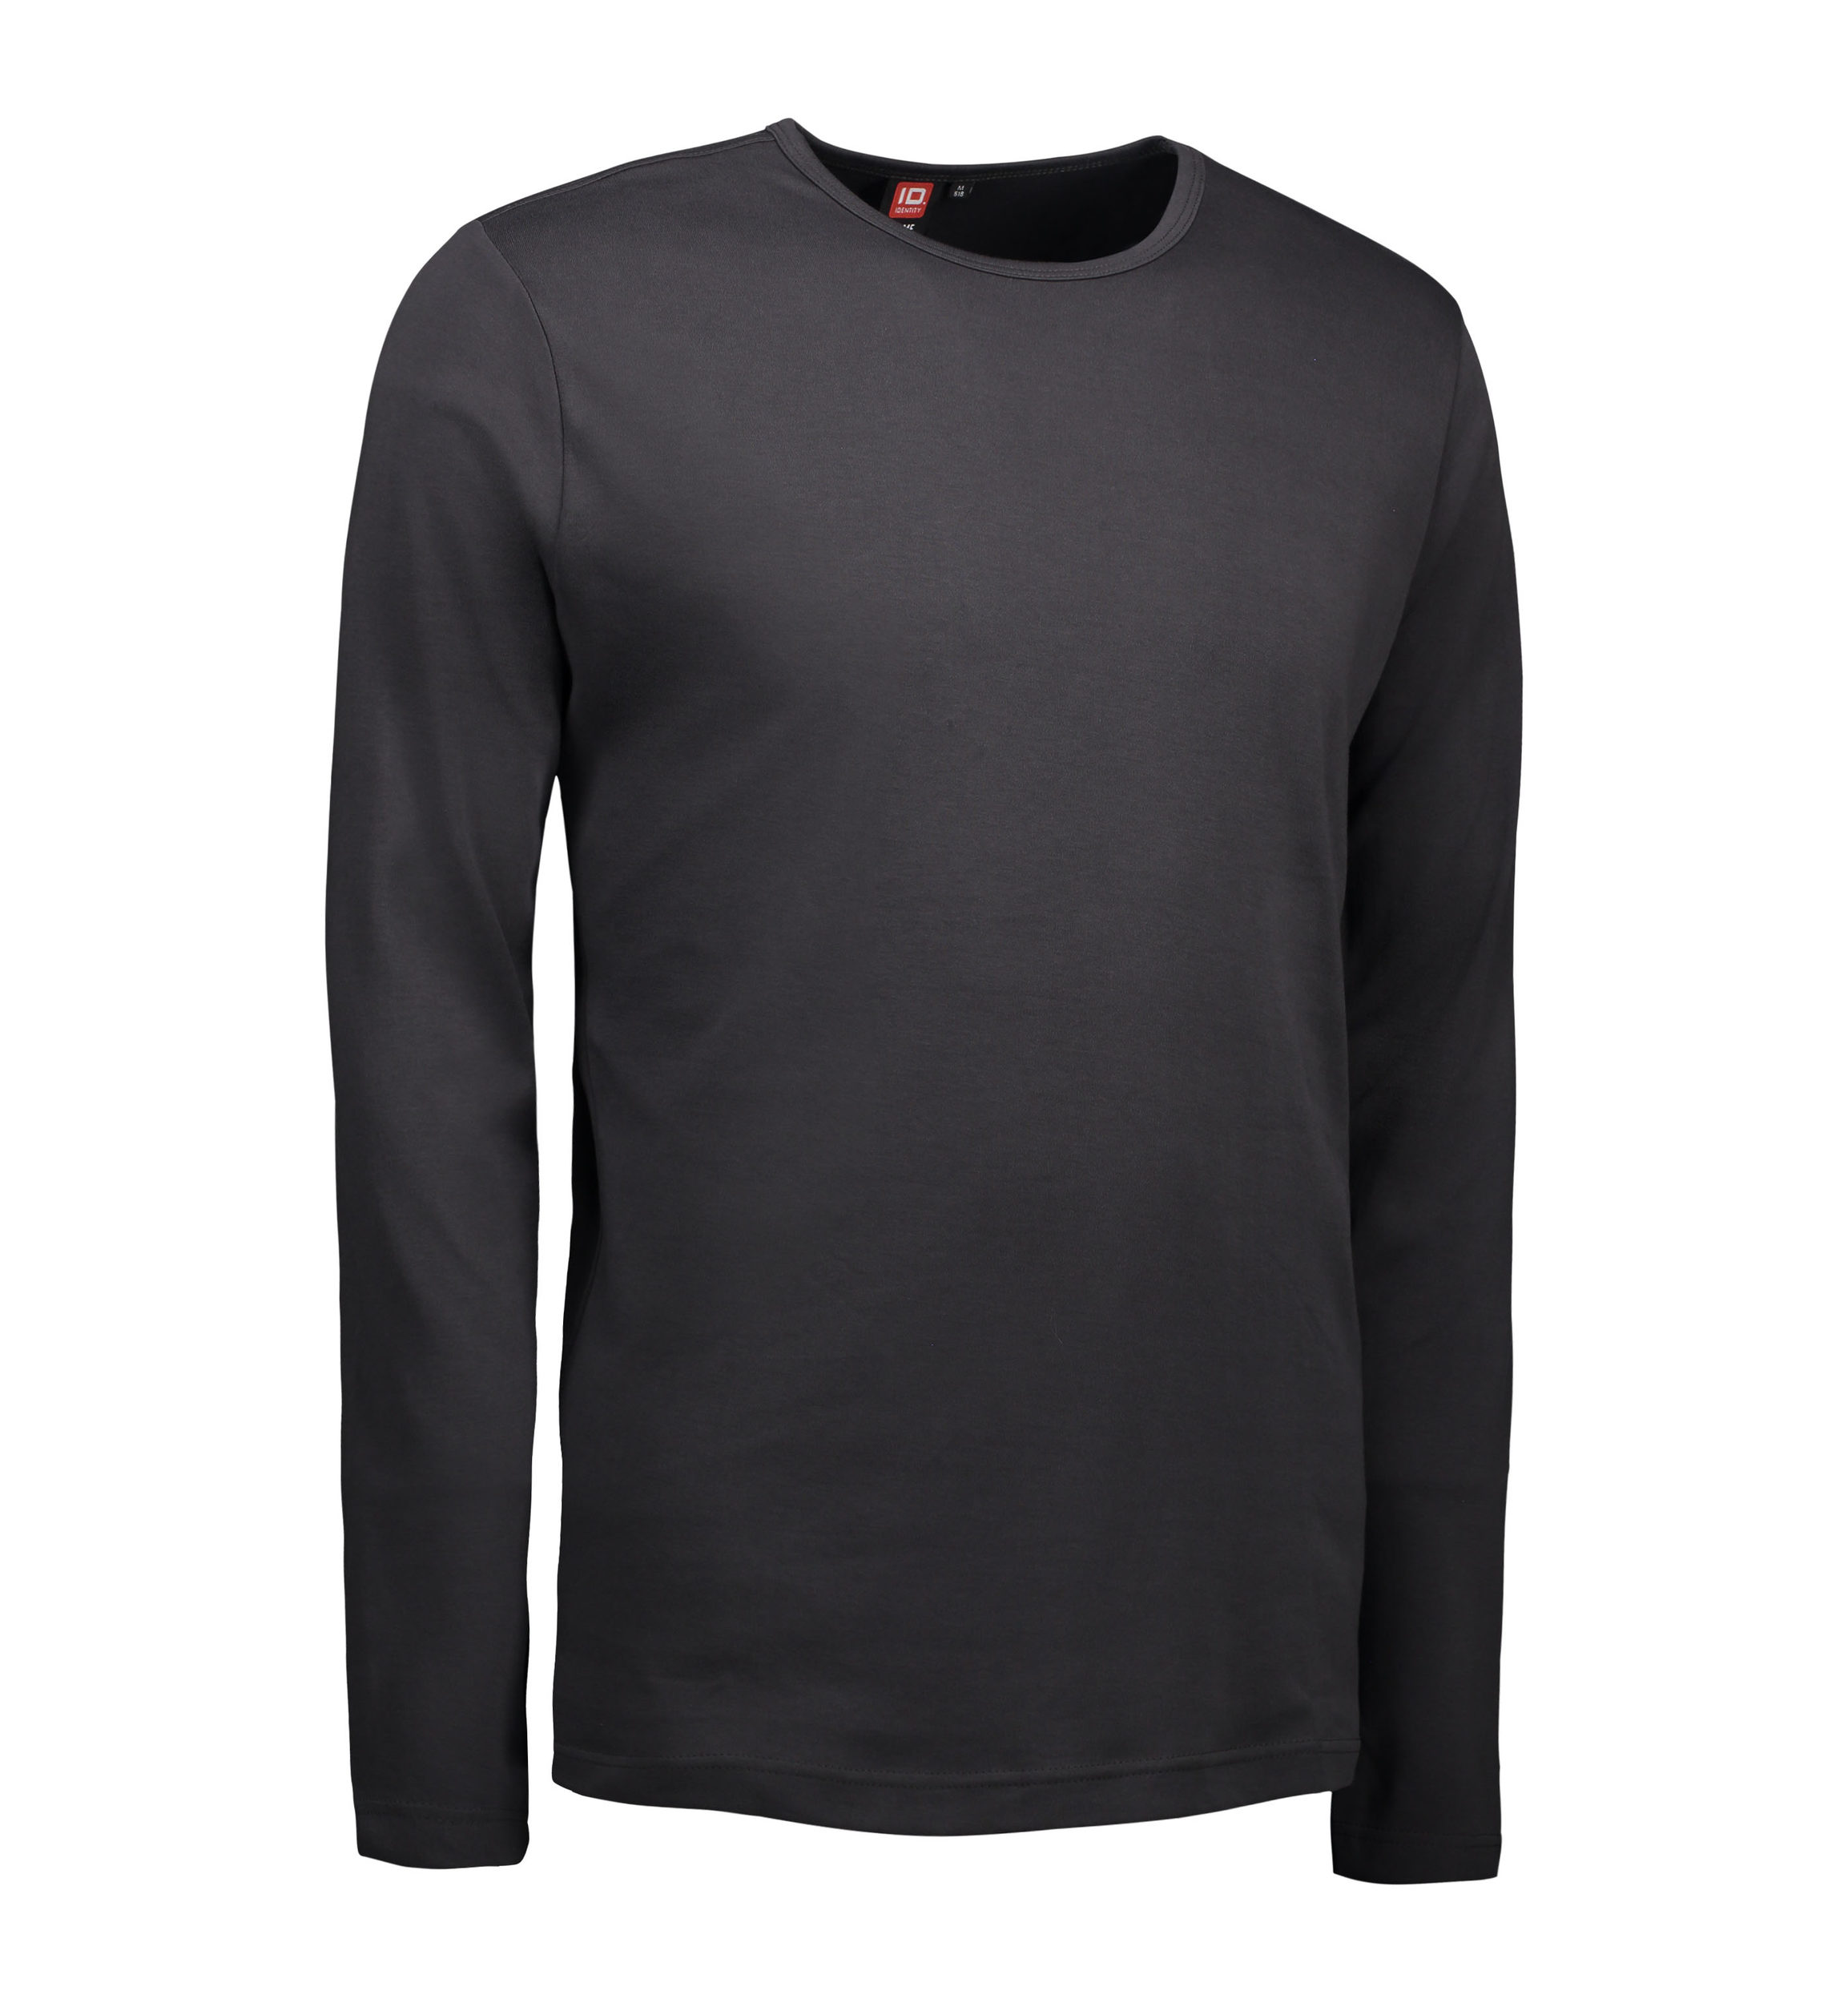 Se Koks grå langærmet t-shirt til mænd - M hos Sygeplejebutikken.dk